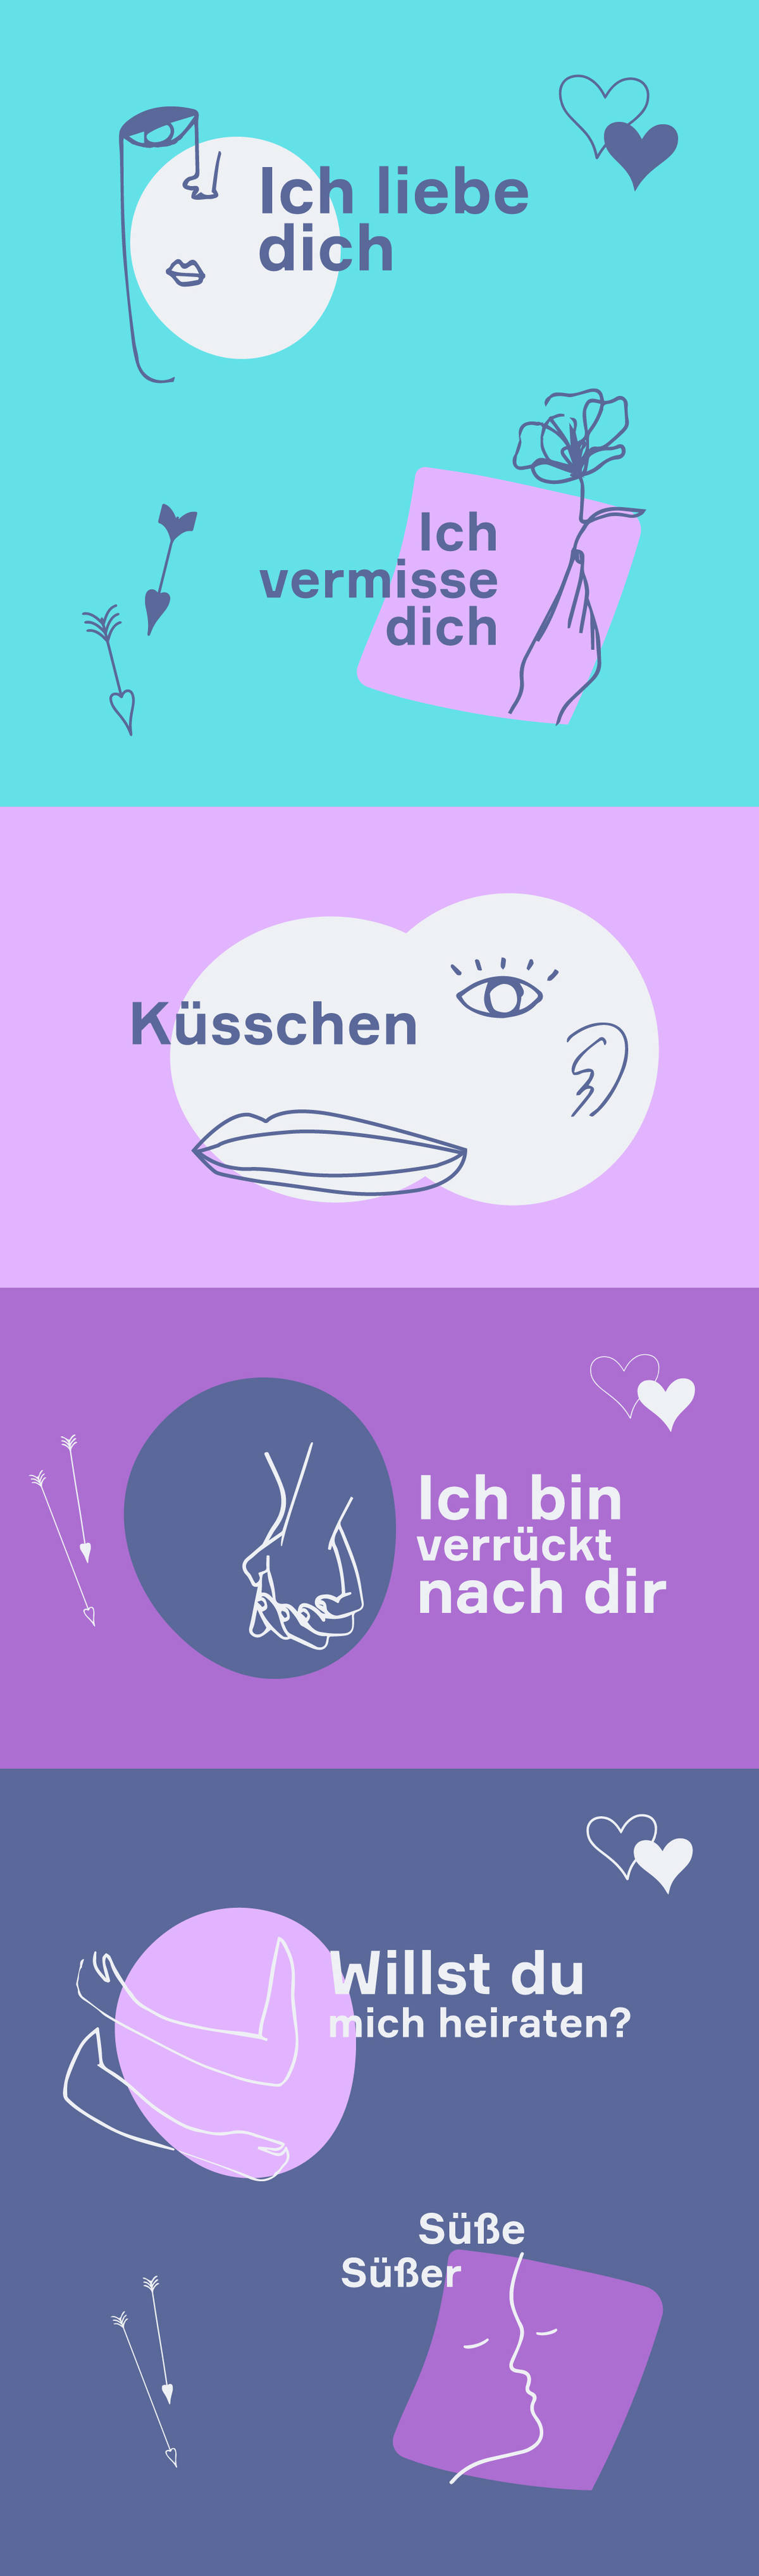 Немецкие SMS-сообщения о любви Немецкие красивые слова